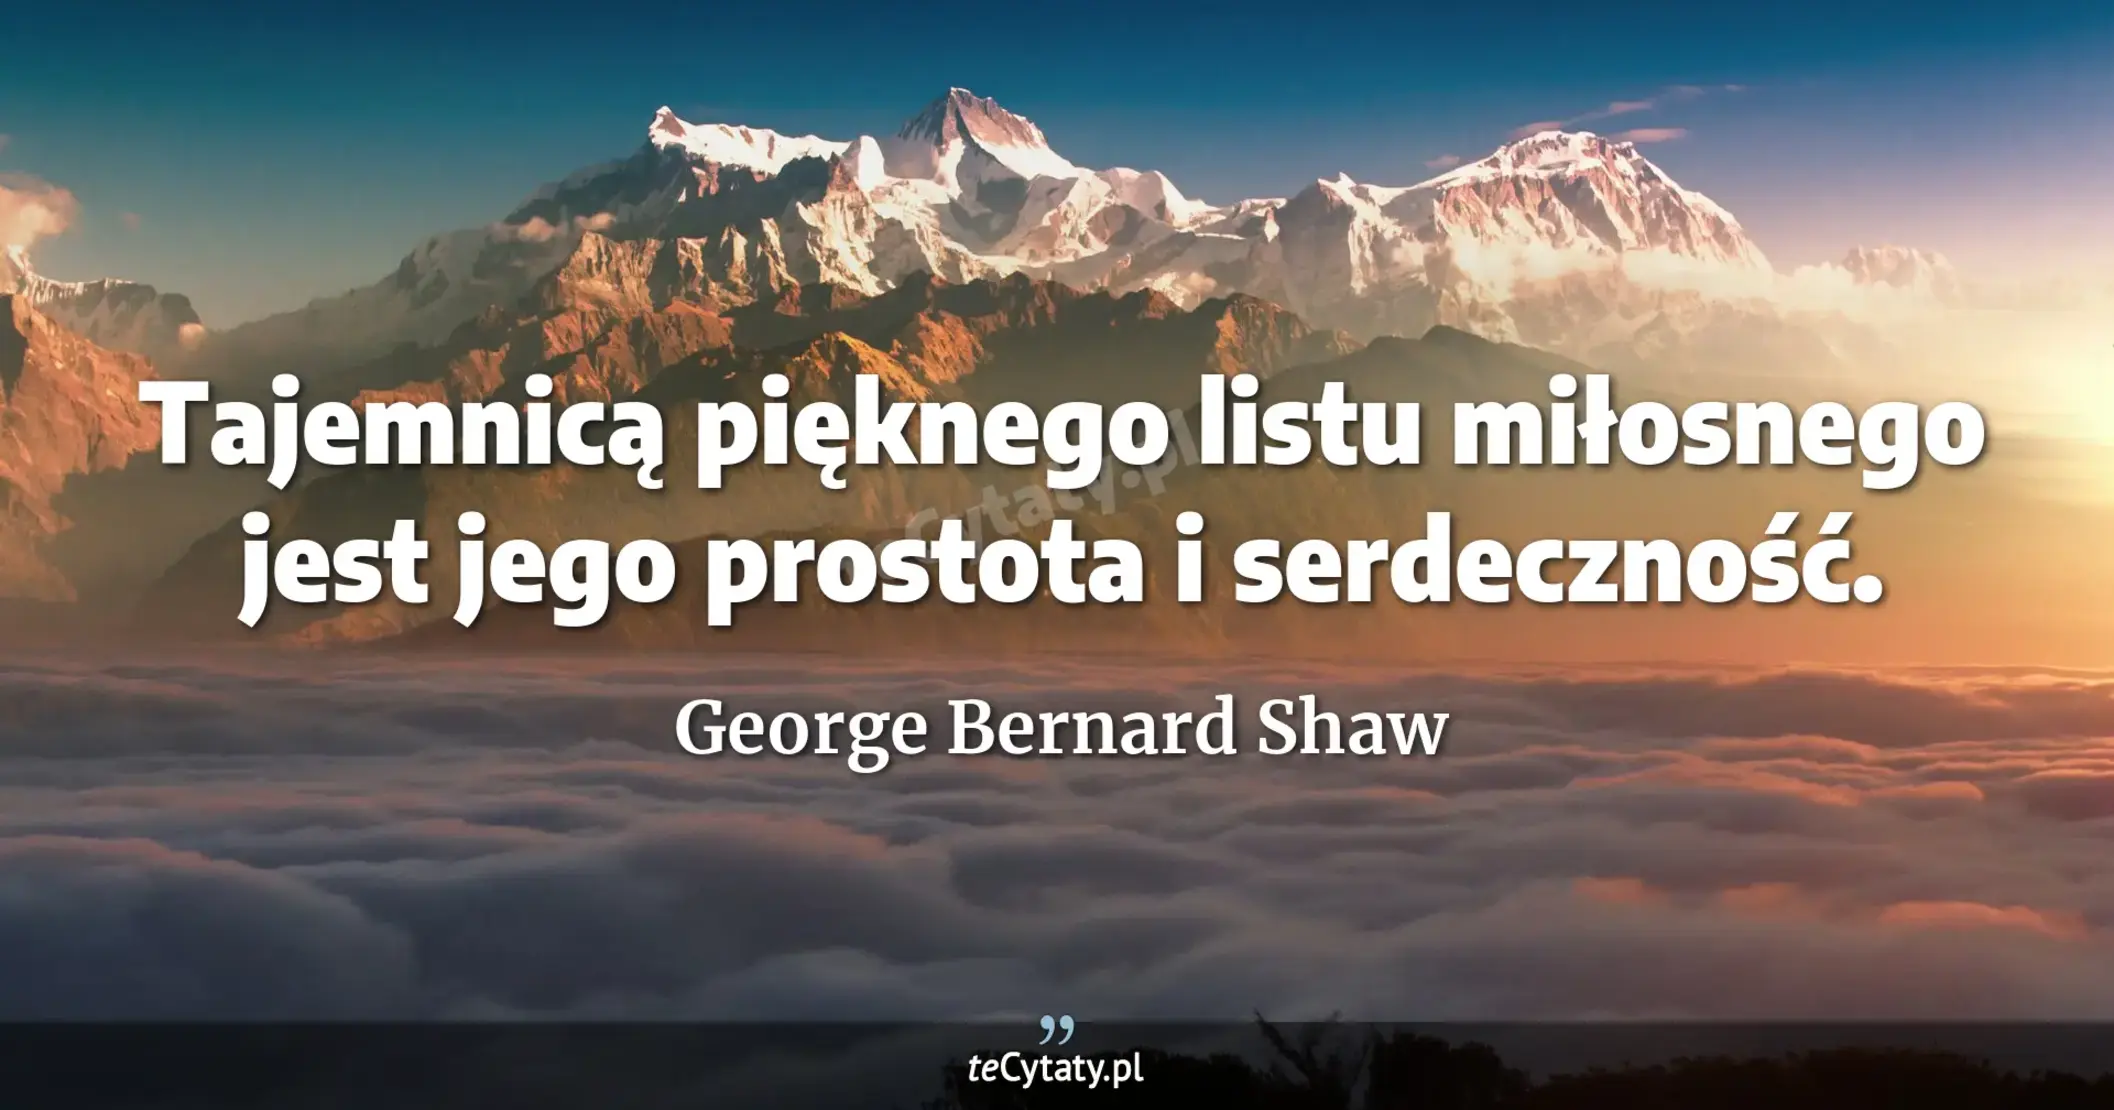 Tajemnicą pięknego listu miłosnego jest jego prostota i serdeczność. - George Bernard Shaw